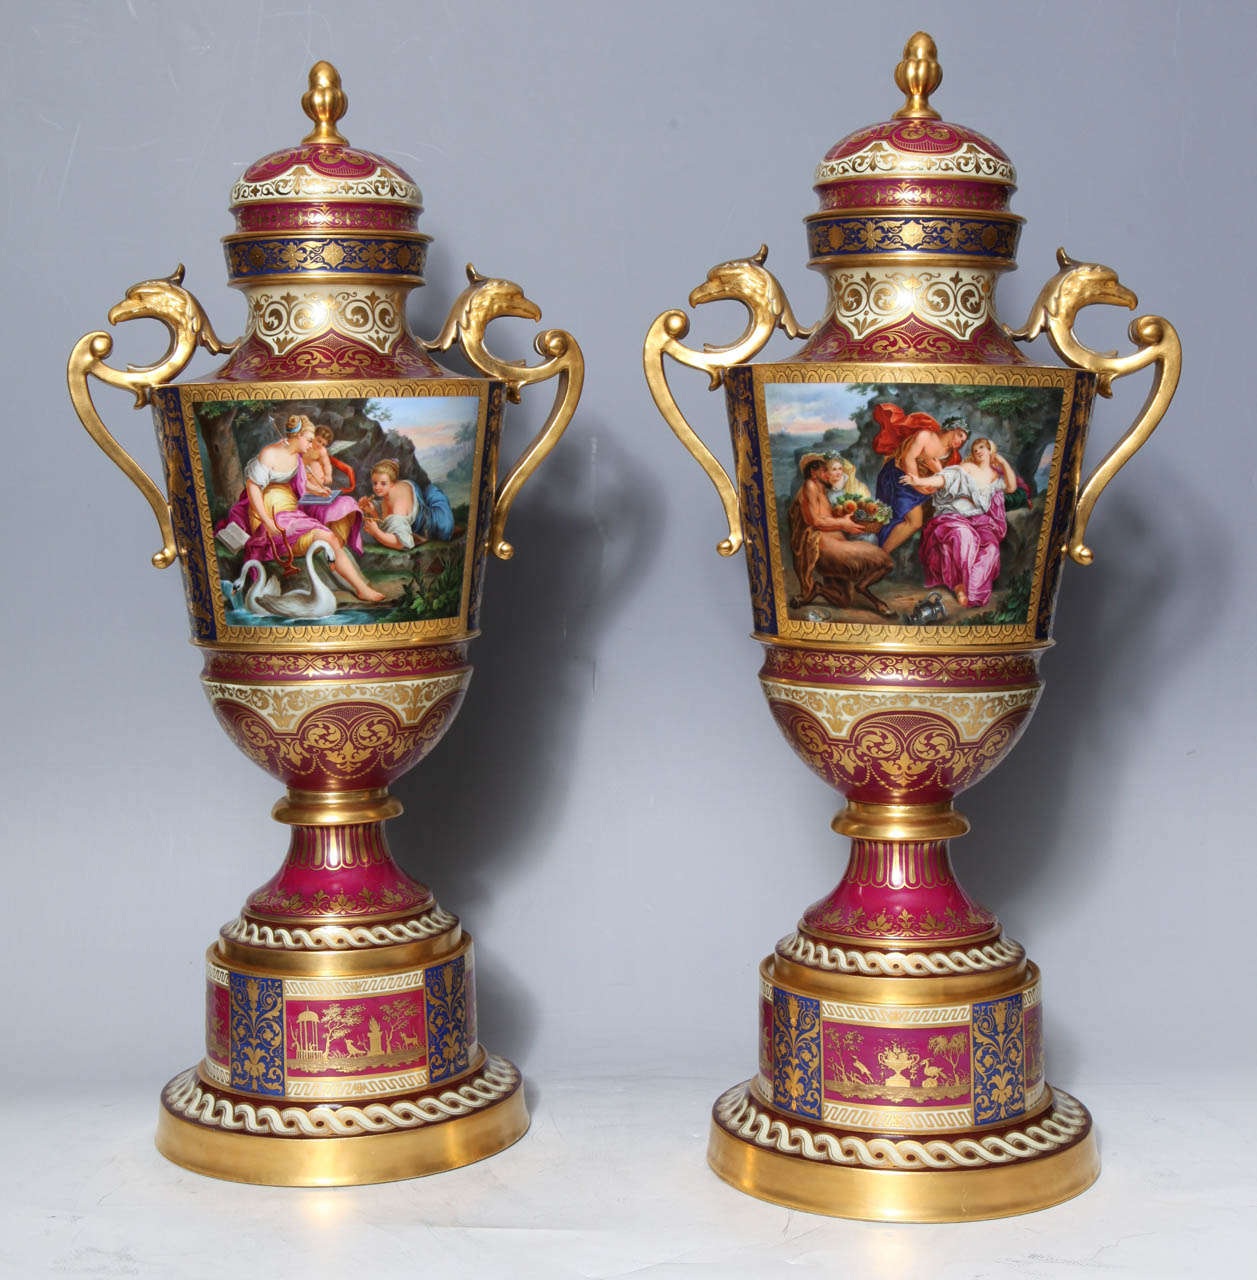 Une magnifique paire d'urnes couvertes de la Vienne royale du 19ème siècle sur des socles d'origine avec des poignées à double aigle représentant des amoureux néoclassiques et Cupidon. Ces urnes ornées présentent des scènes peuplées de cupidons